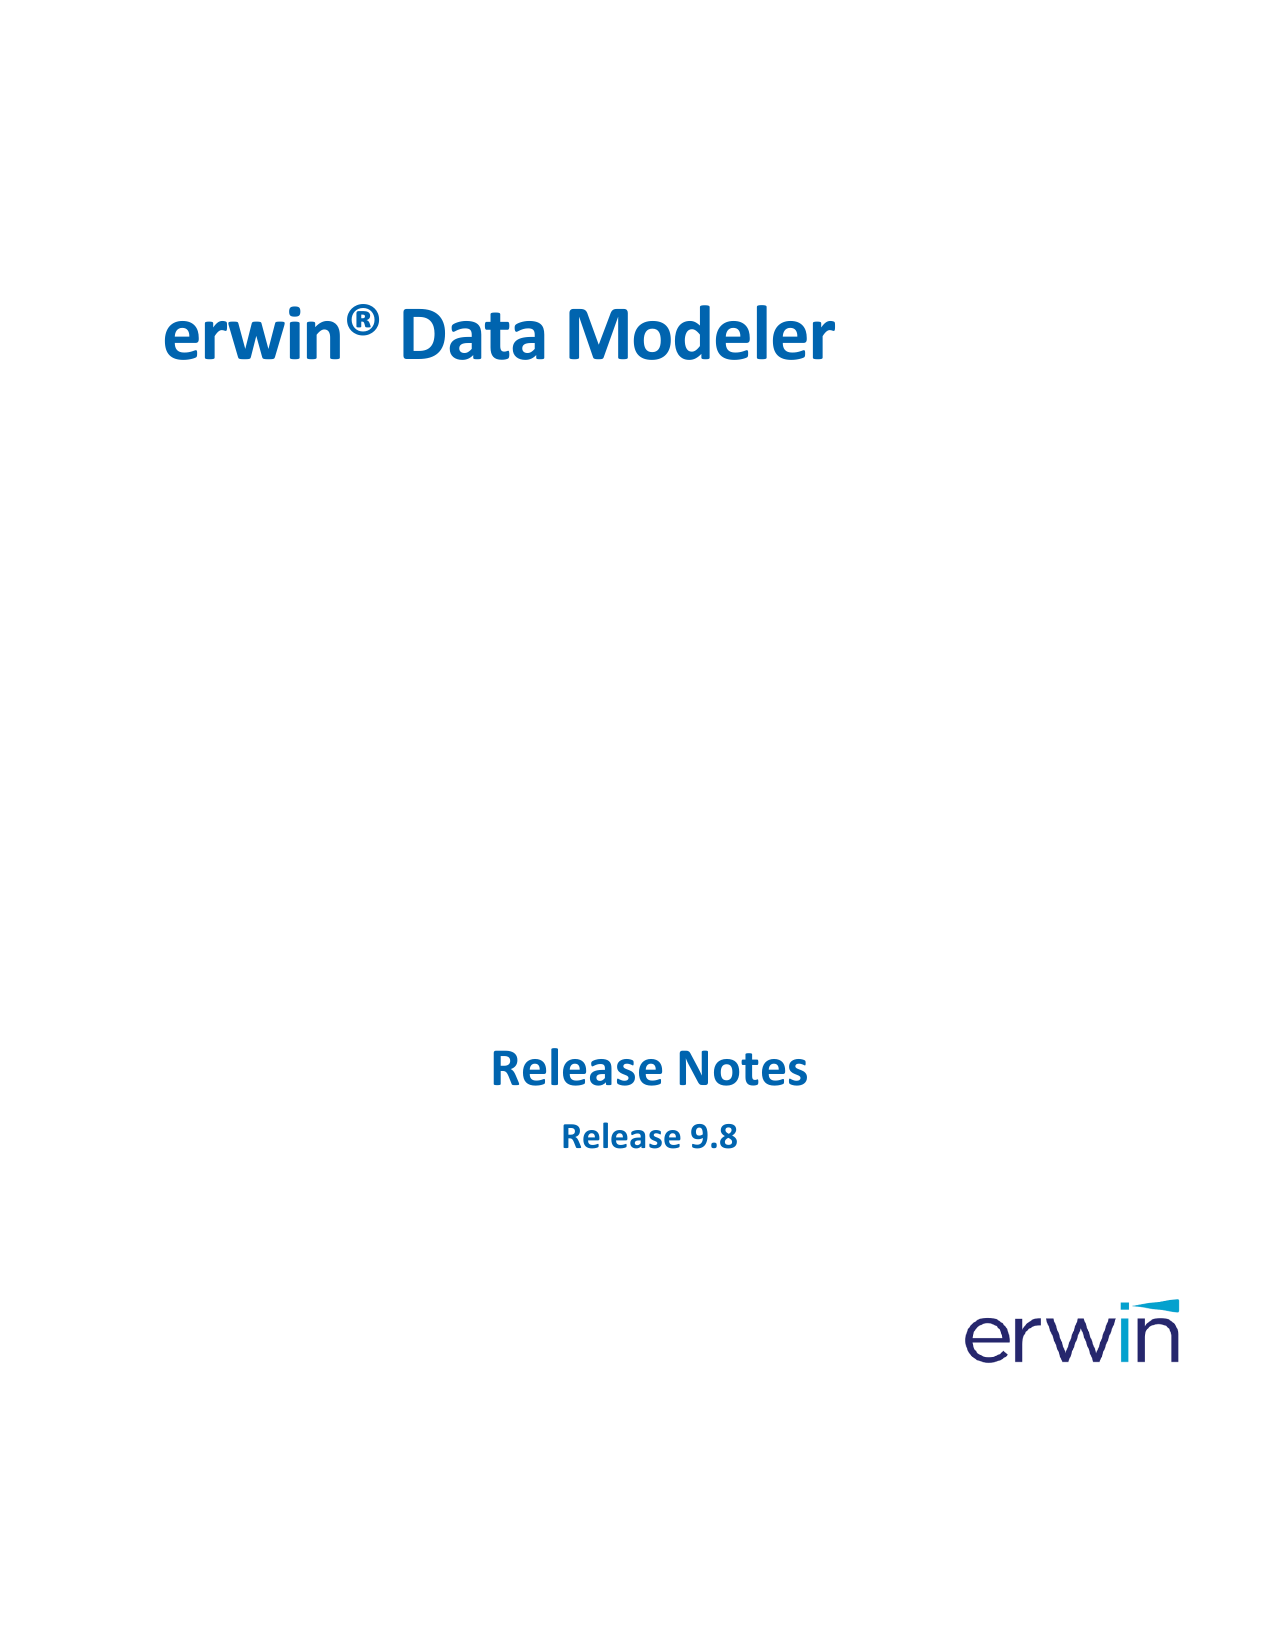 erwin data modeler 7.3 download free